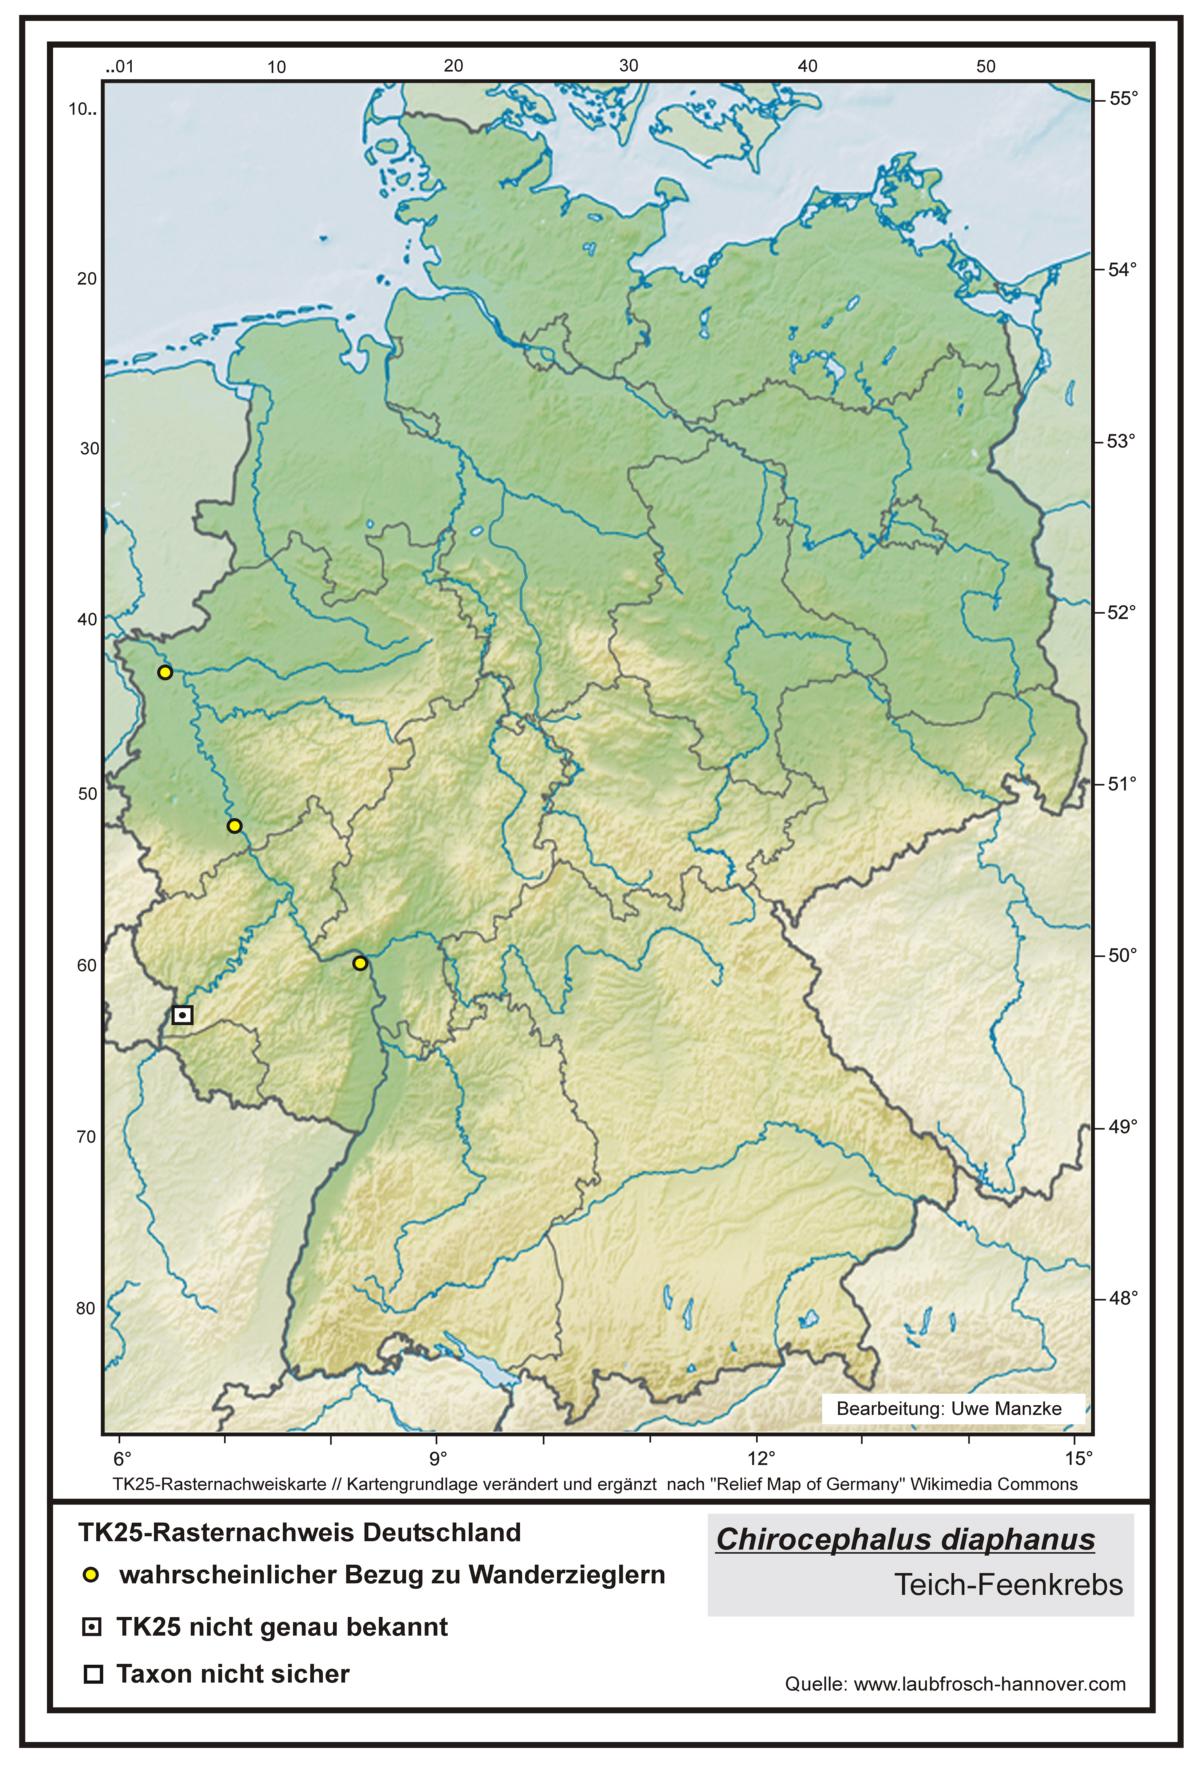 Chirocephalus diaphanus TK25-Rasternachweiskarte Deutschland, Bearbeitung Uwe Manzke; Kartengrundlage: verändert n. Relief Map of Germany Wikimedia Commons https://commons.wikimedia.org/wiki/File:Relief_Map_of_Germany.svg